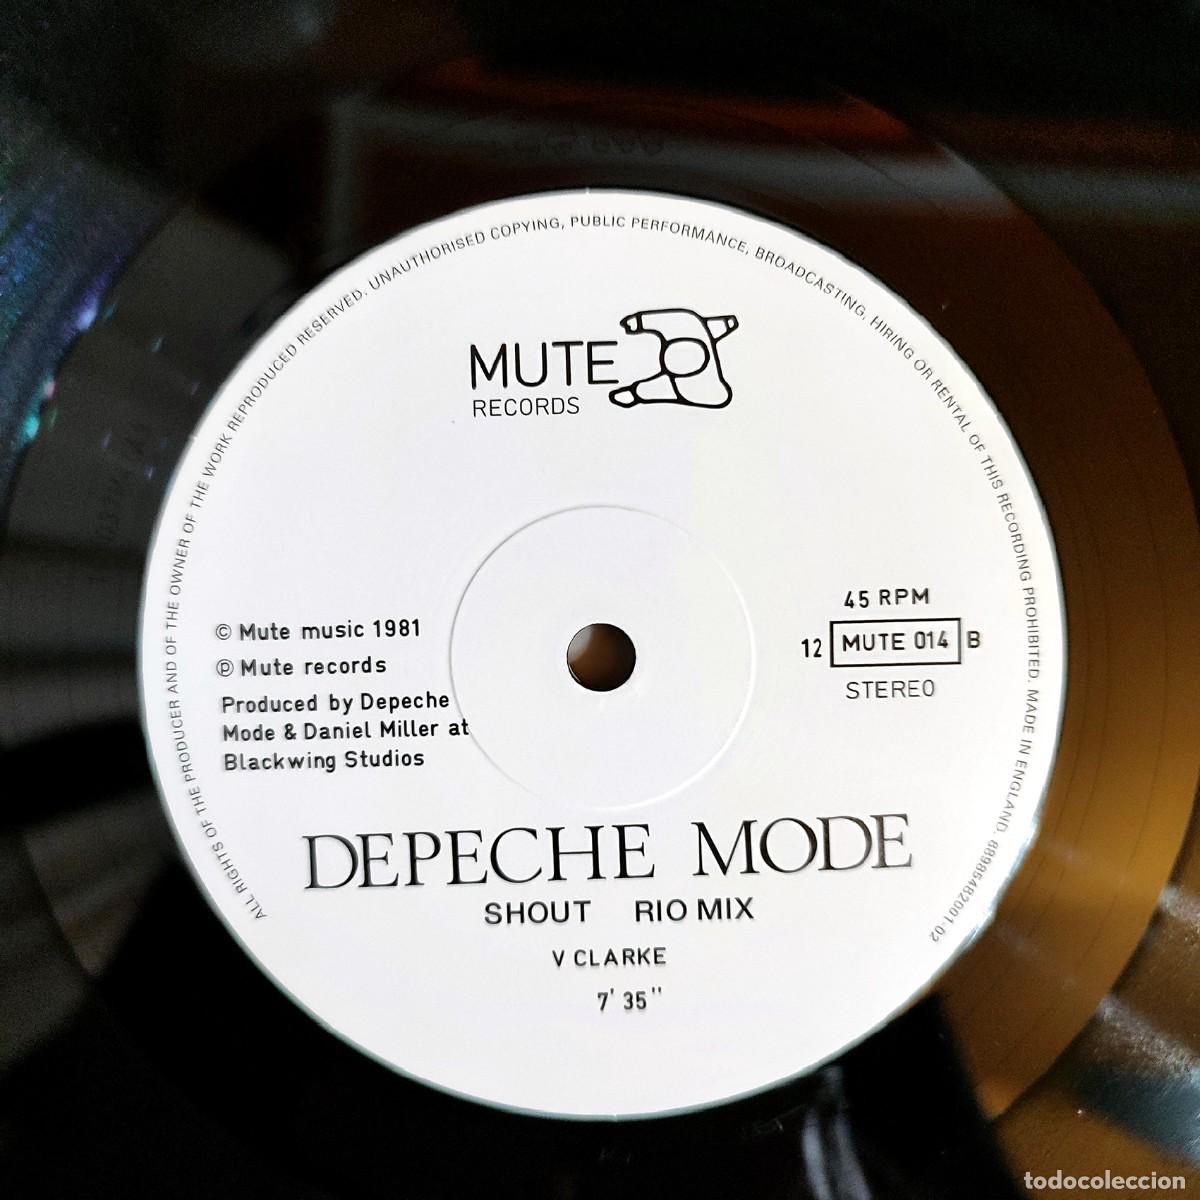 Las mejores ofertas en Depeche Mode 12 discos de vinilo de Registro